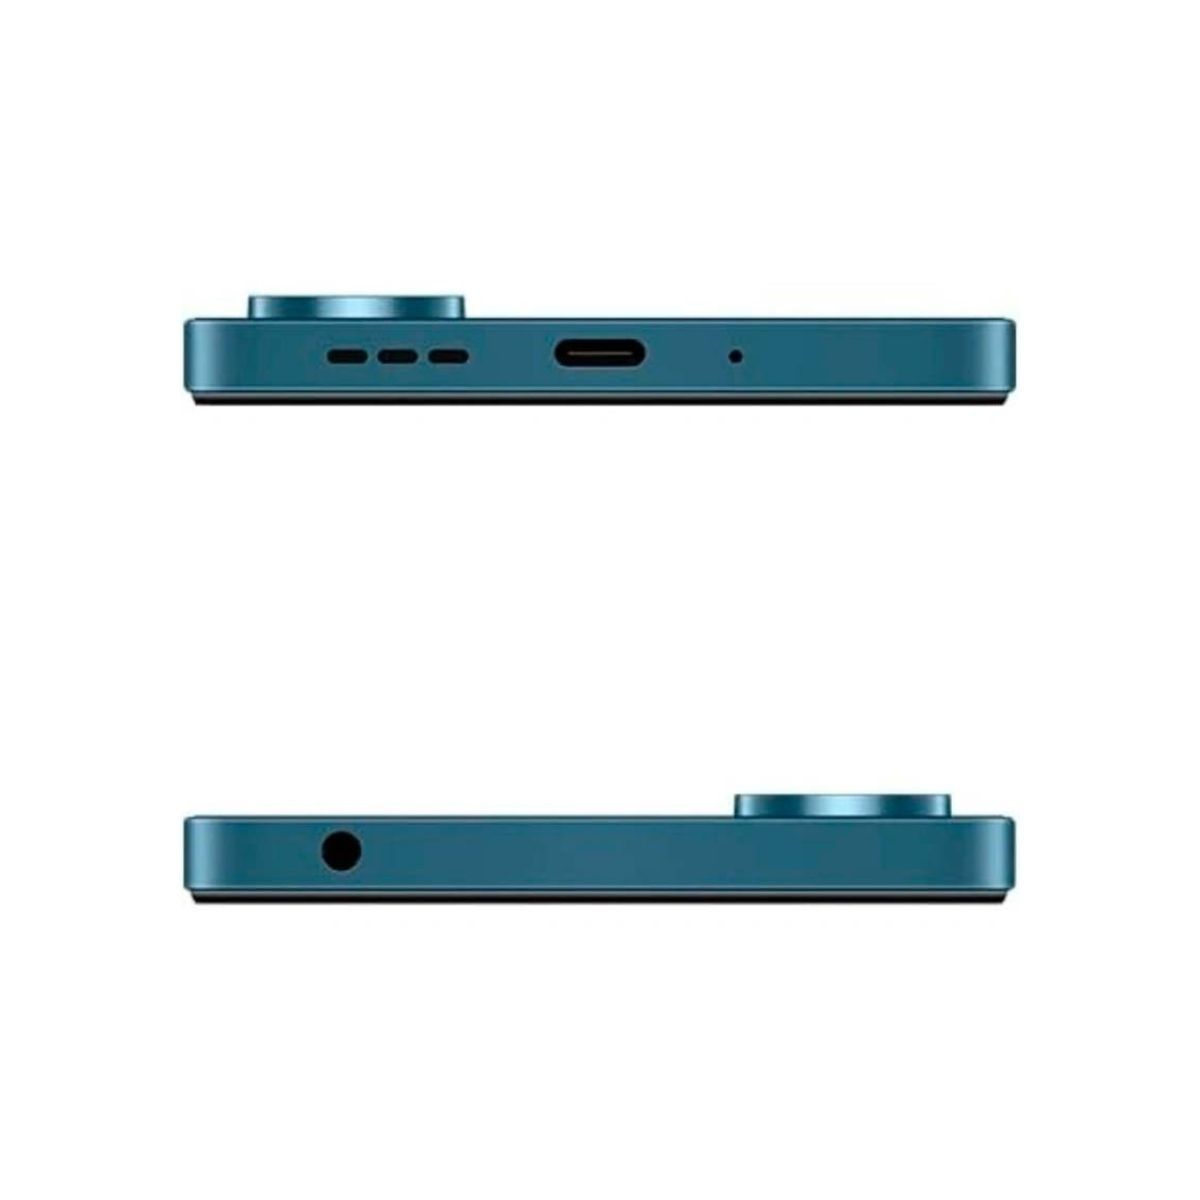 Destornillador Xiaomi Mi 16 en 1 Ratchet Screwdriver - Smart Concept